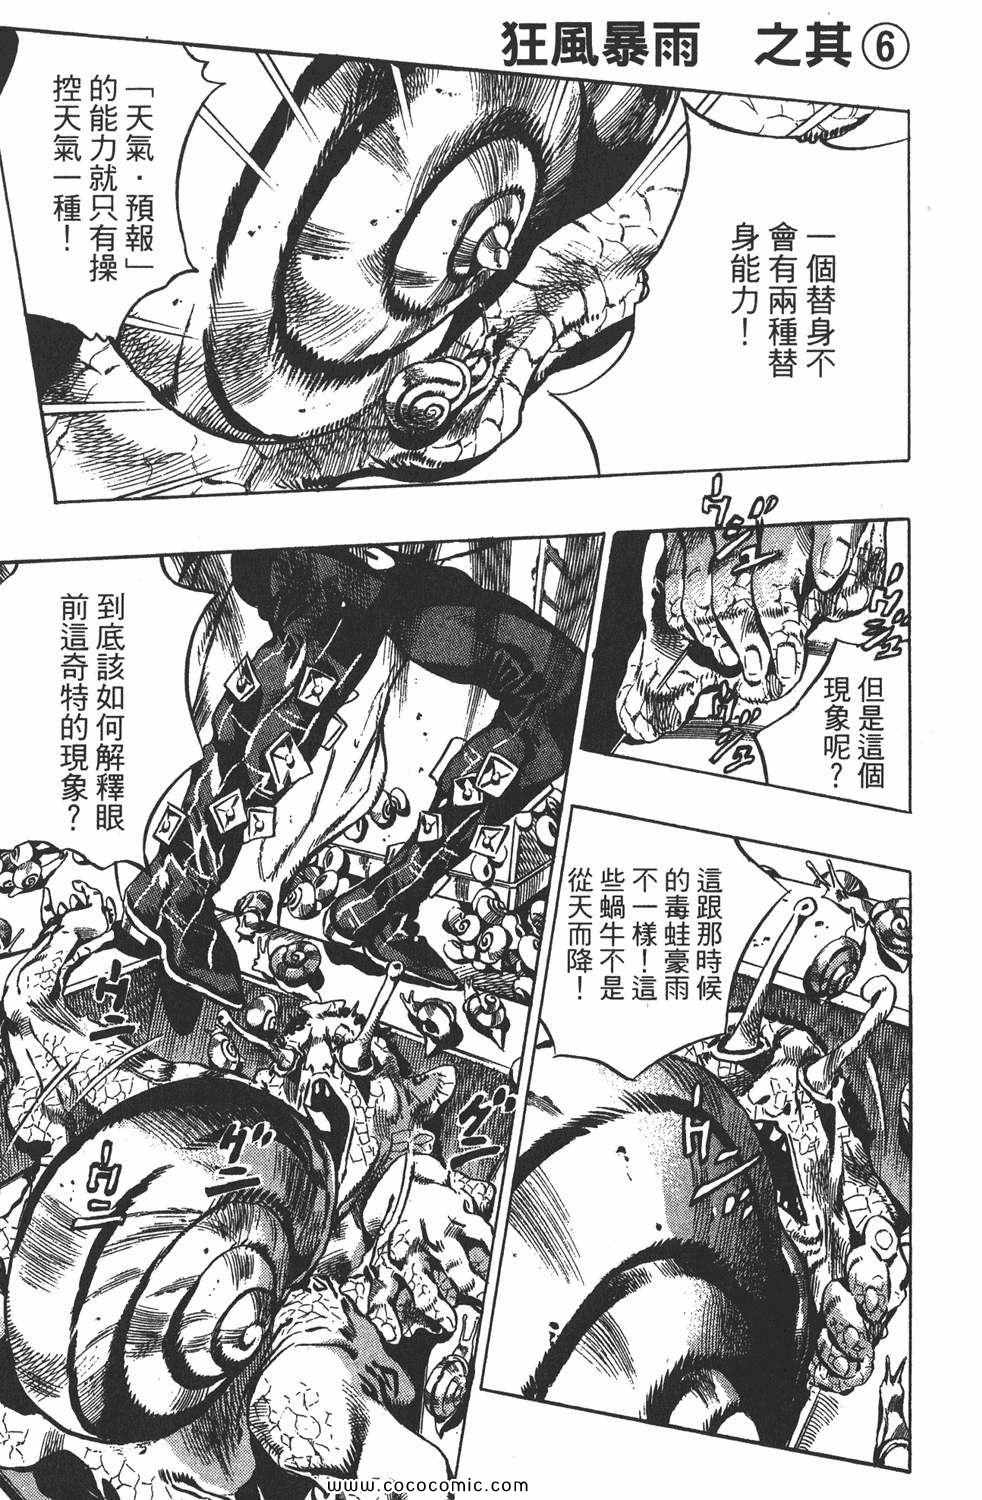 《JOJO奇妙冒险第六部》漫画 石之海 15卷